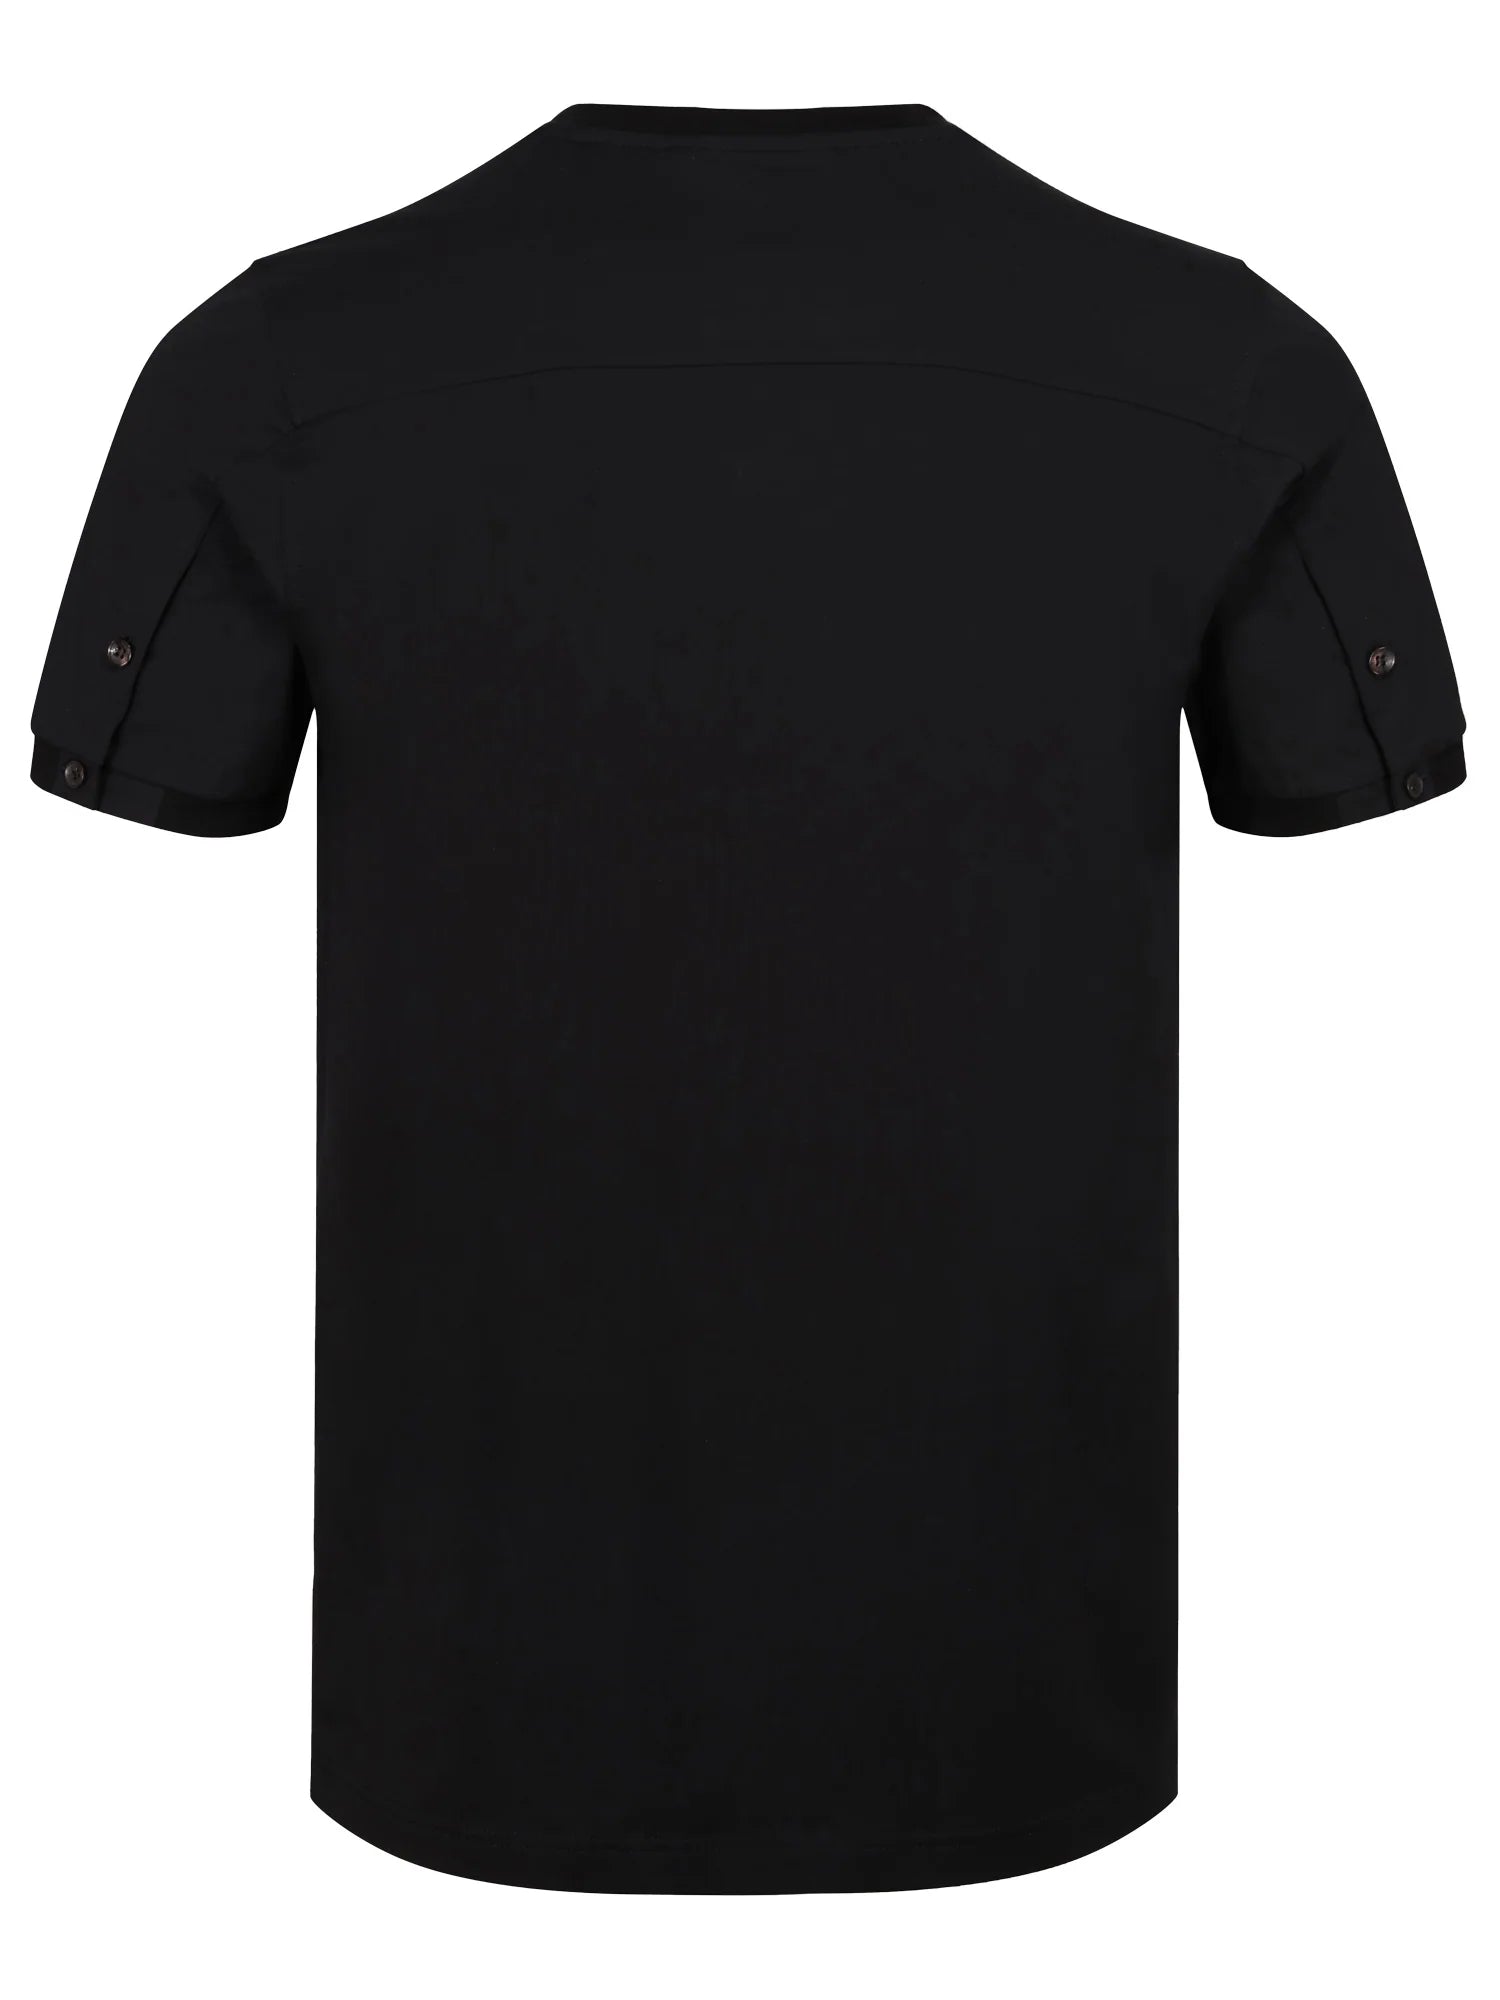 Luke Shanghai T-Shirt Black